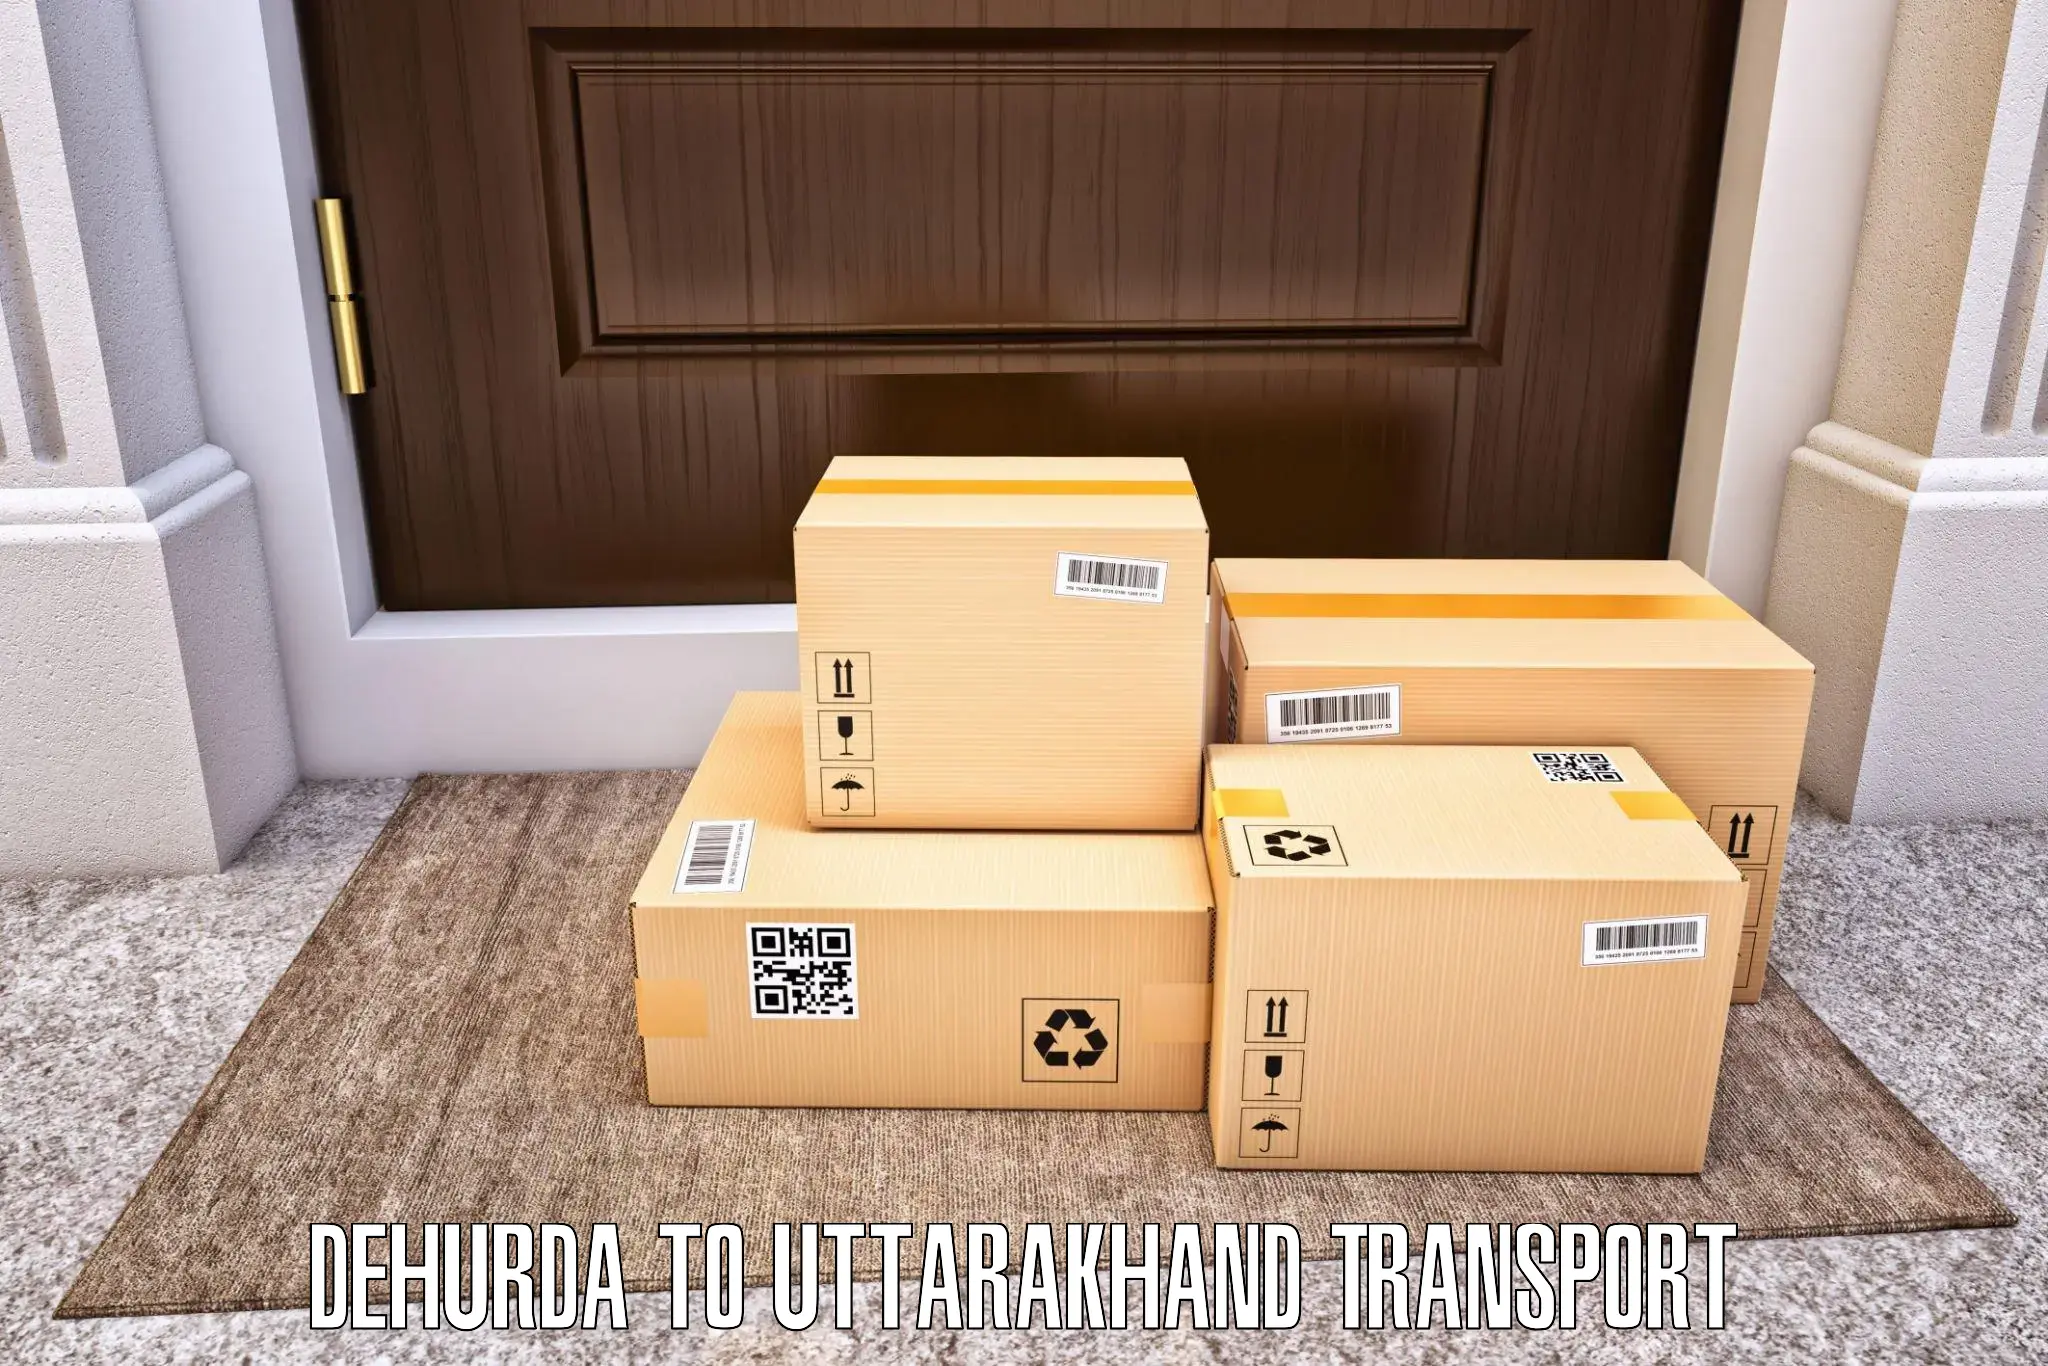 Furniture transport service Dehurda to Bhagwanpur